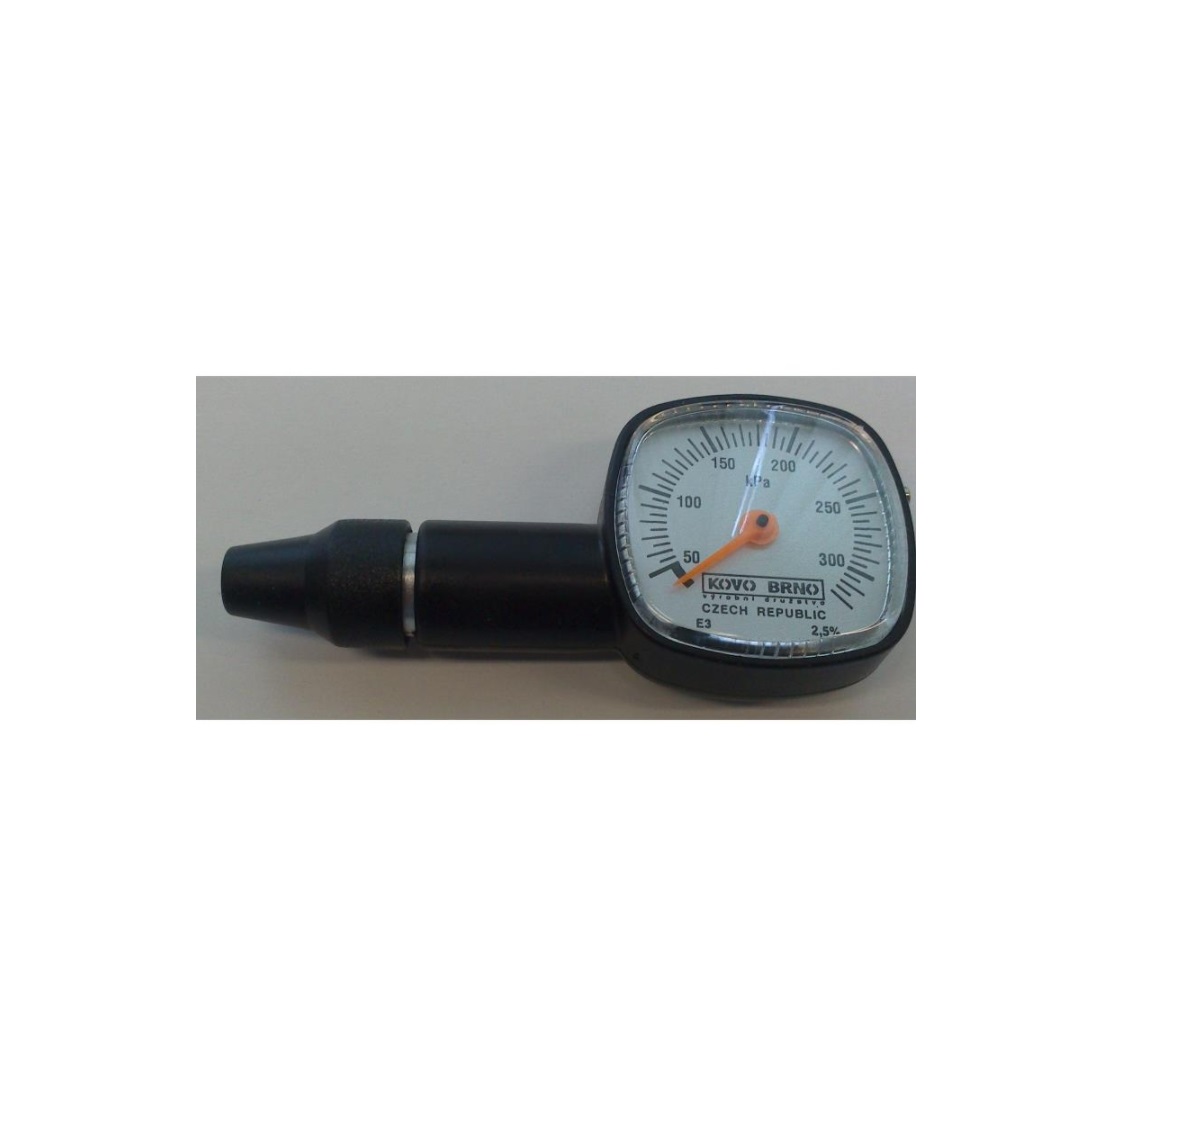 Mjerenje tlaka - Pressure measurement - Wikipedia